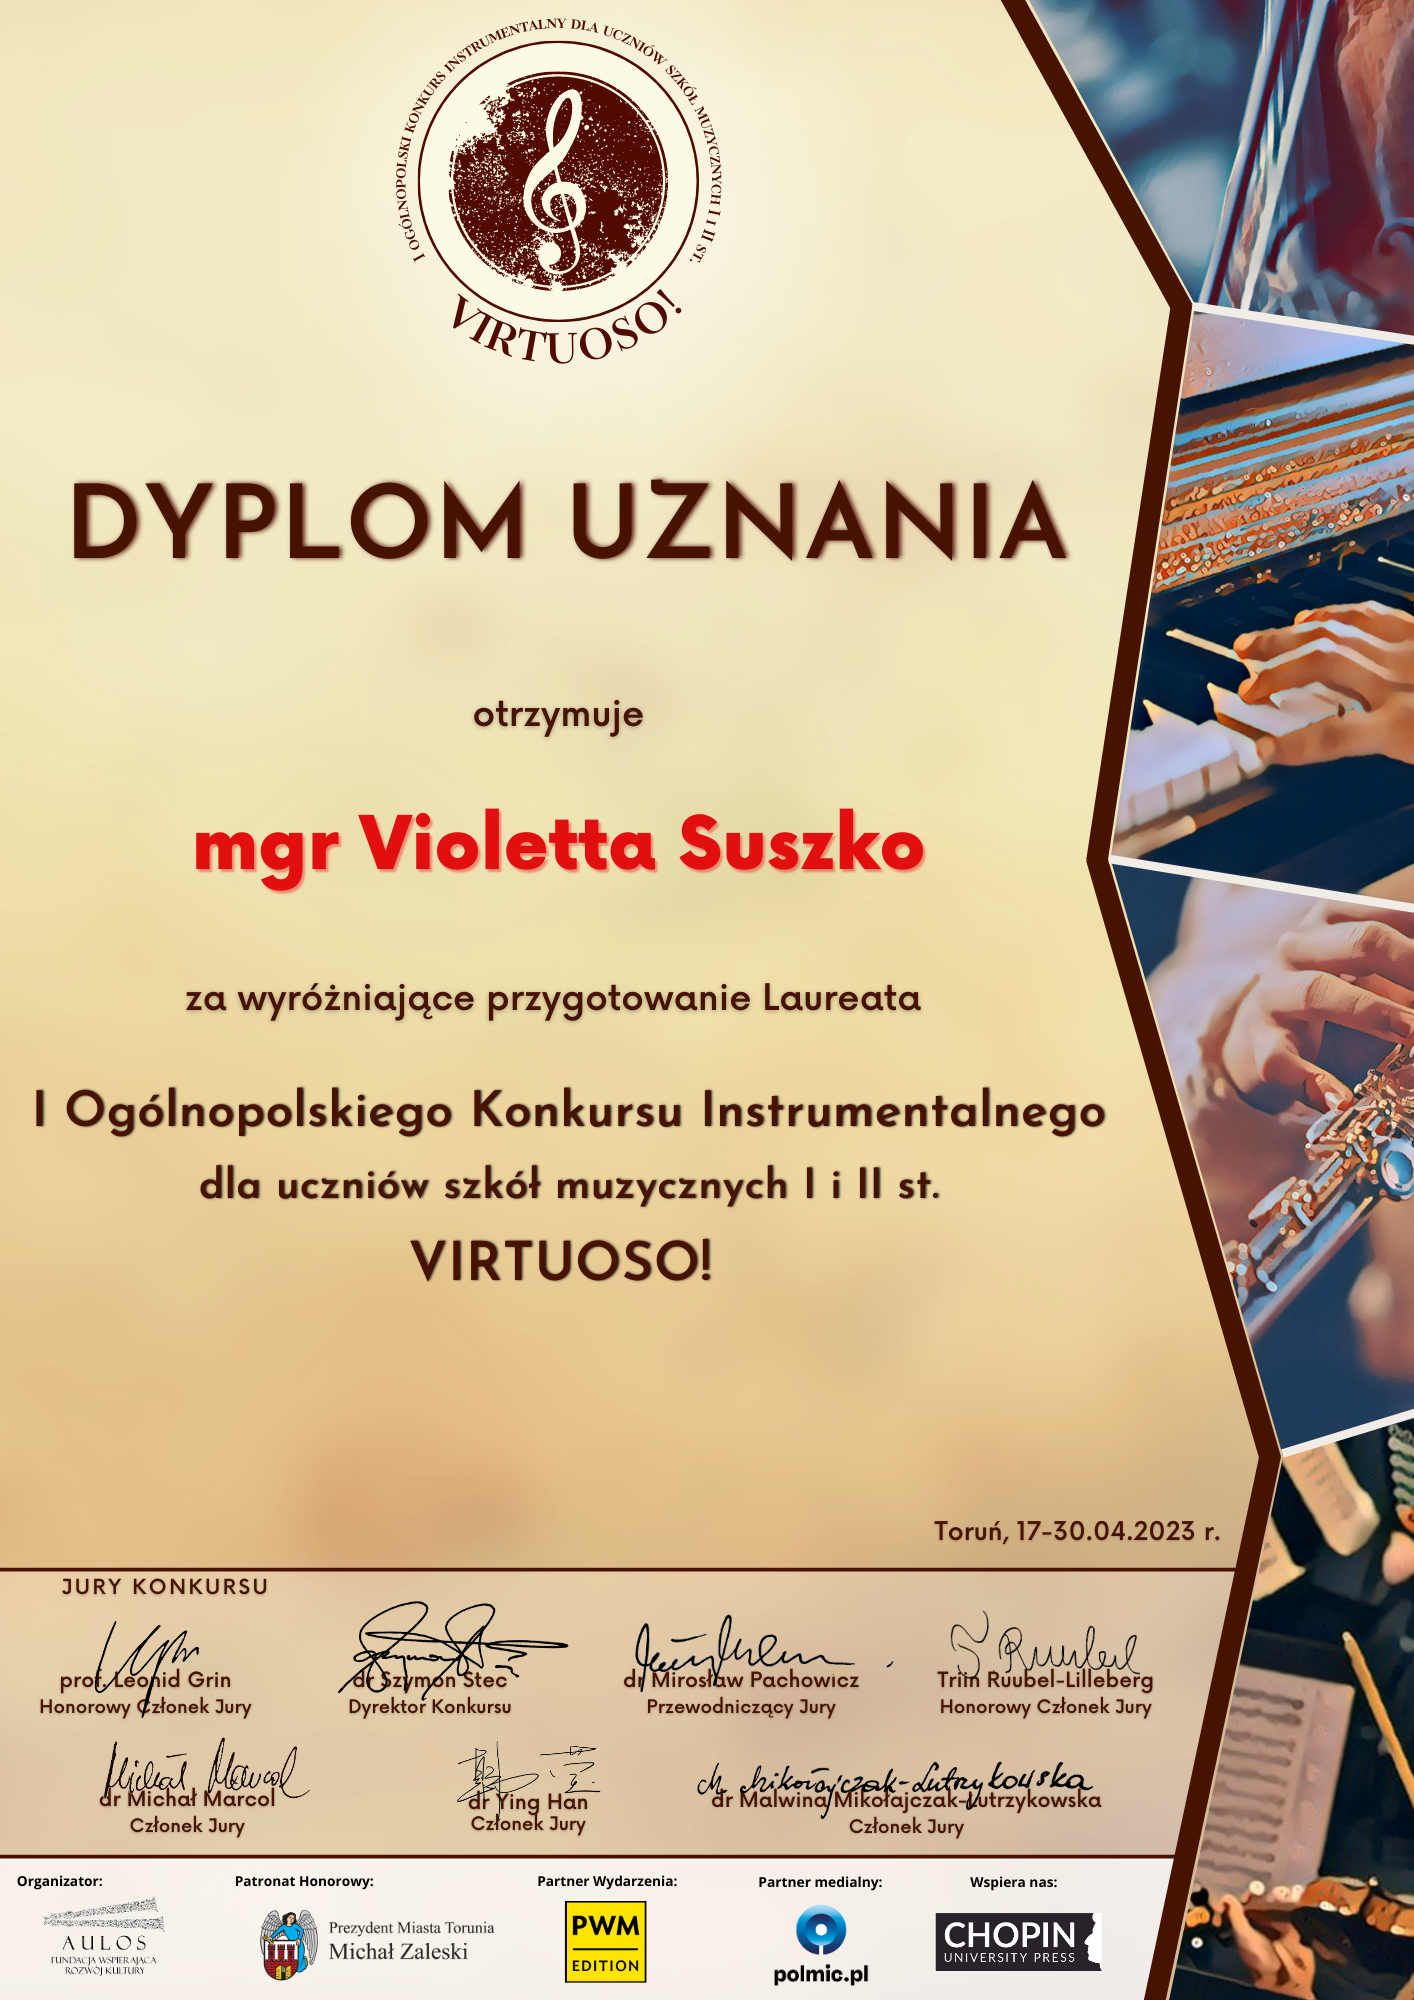 Dyplom uznania umieszczony jest na takim samym tle jak plakat informujący o wydarzeniu. mgr Violetta Suszko zdobyła dyplom za wyróżniające przygotowanie Laureata I Ogólnopolskiego Konkursu Instrumentalnego dla uczniów szkół Muzycznych I i II st VIRTUOSO!